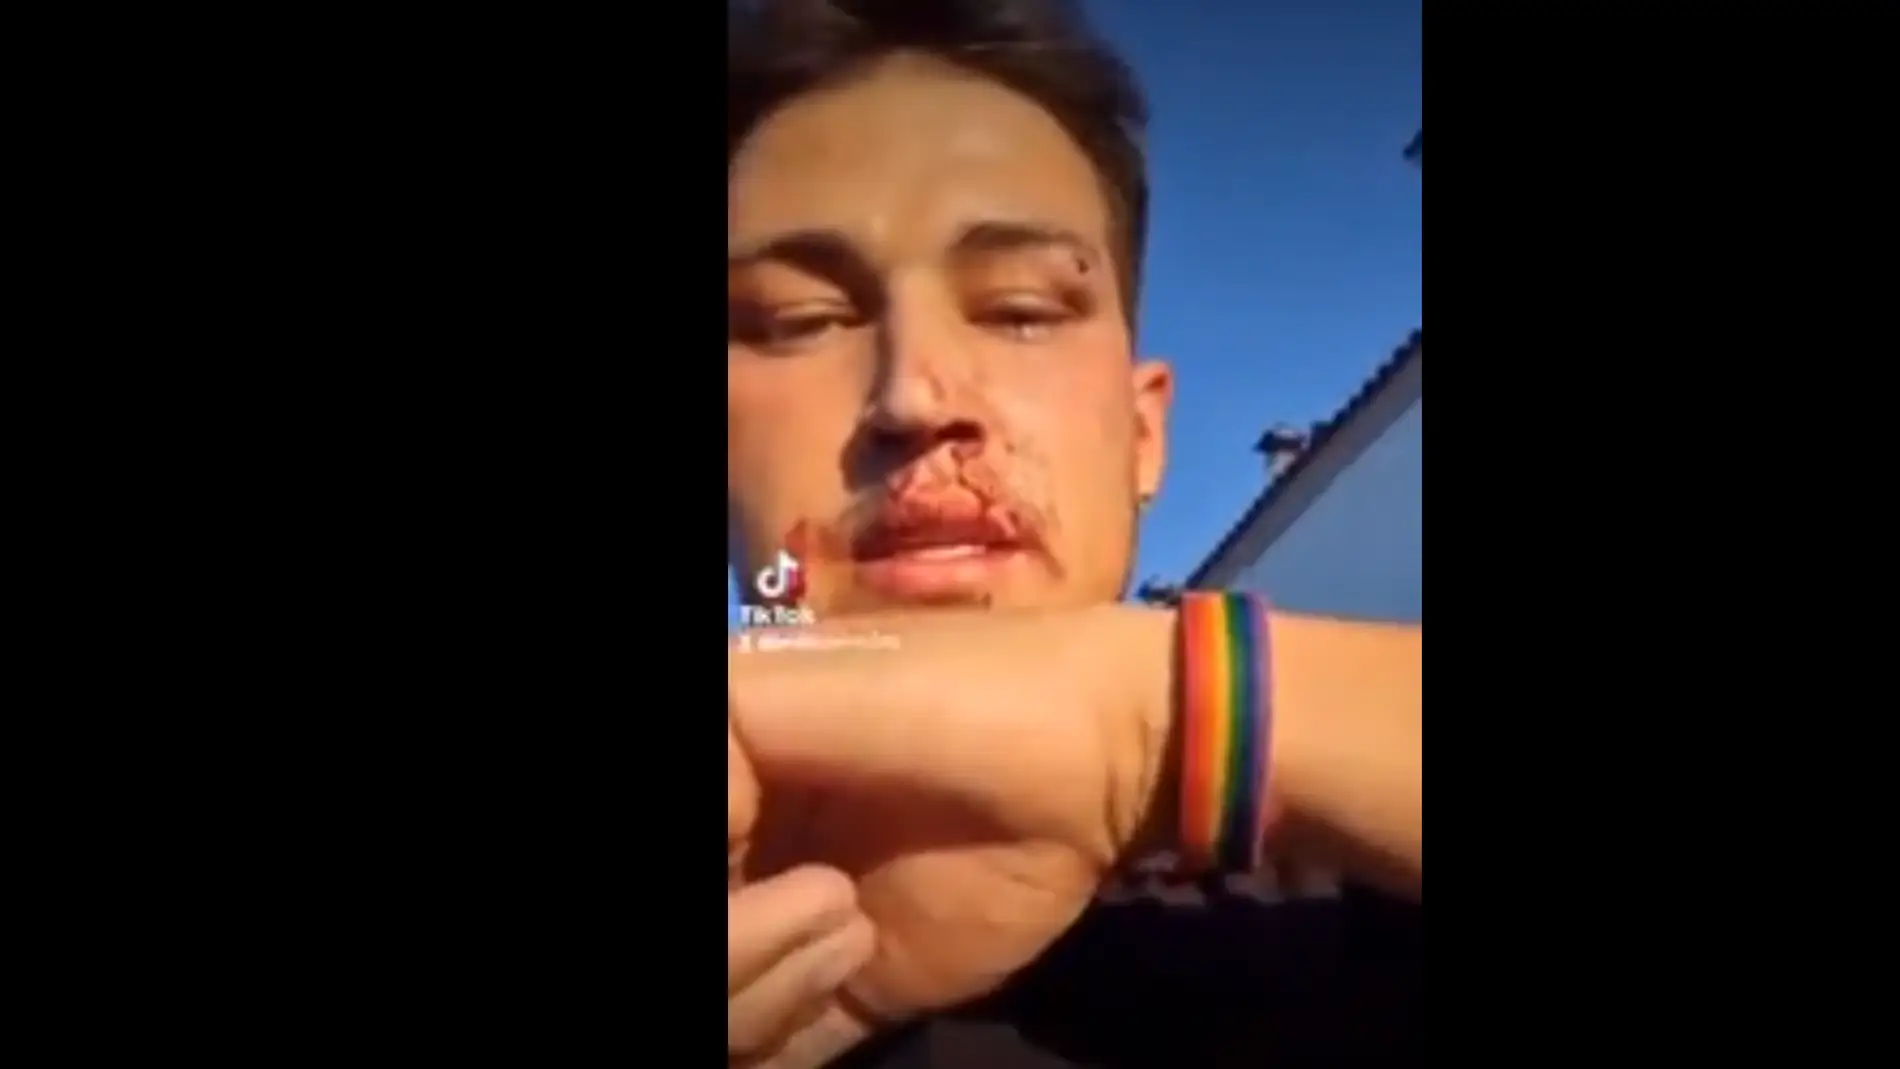 Un camarero de Huelva denuncia una agresión LGTBfóbica al grito de "maricón de mierda"